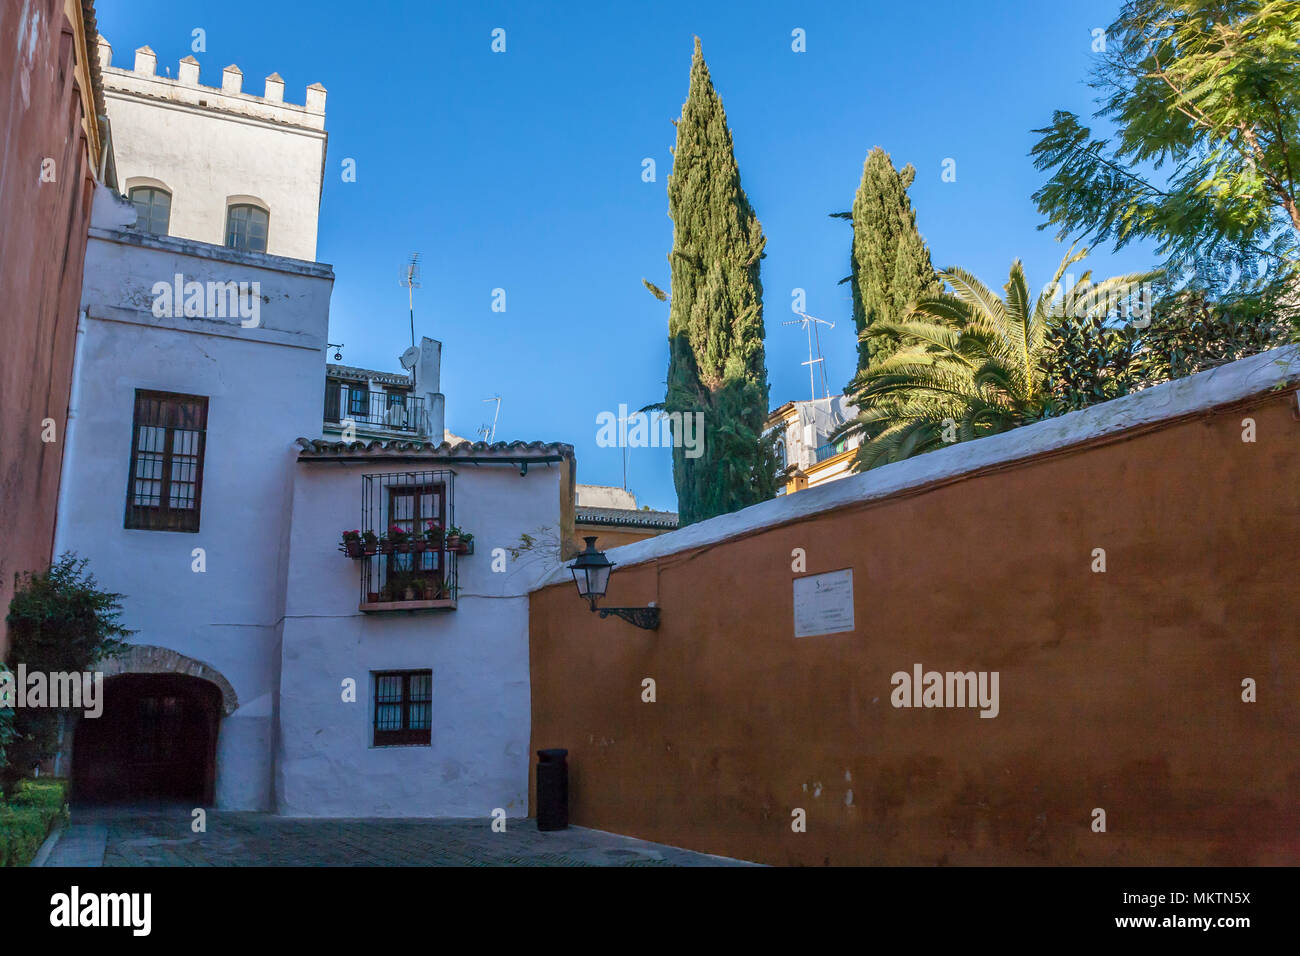 Calle Judería, Barrio de Santa Cruz, Sevilla, Andalusia, Spain Stock Photo